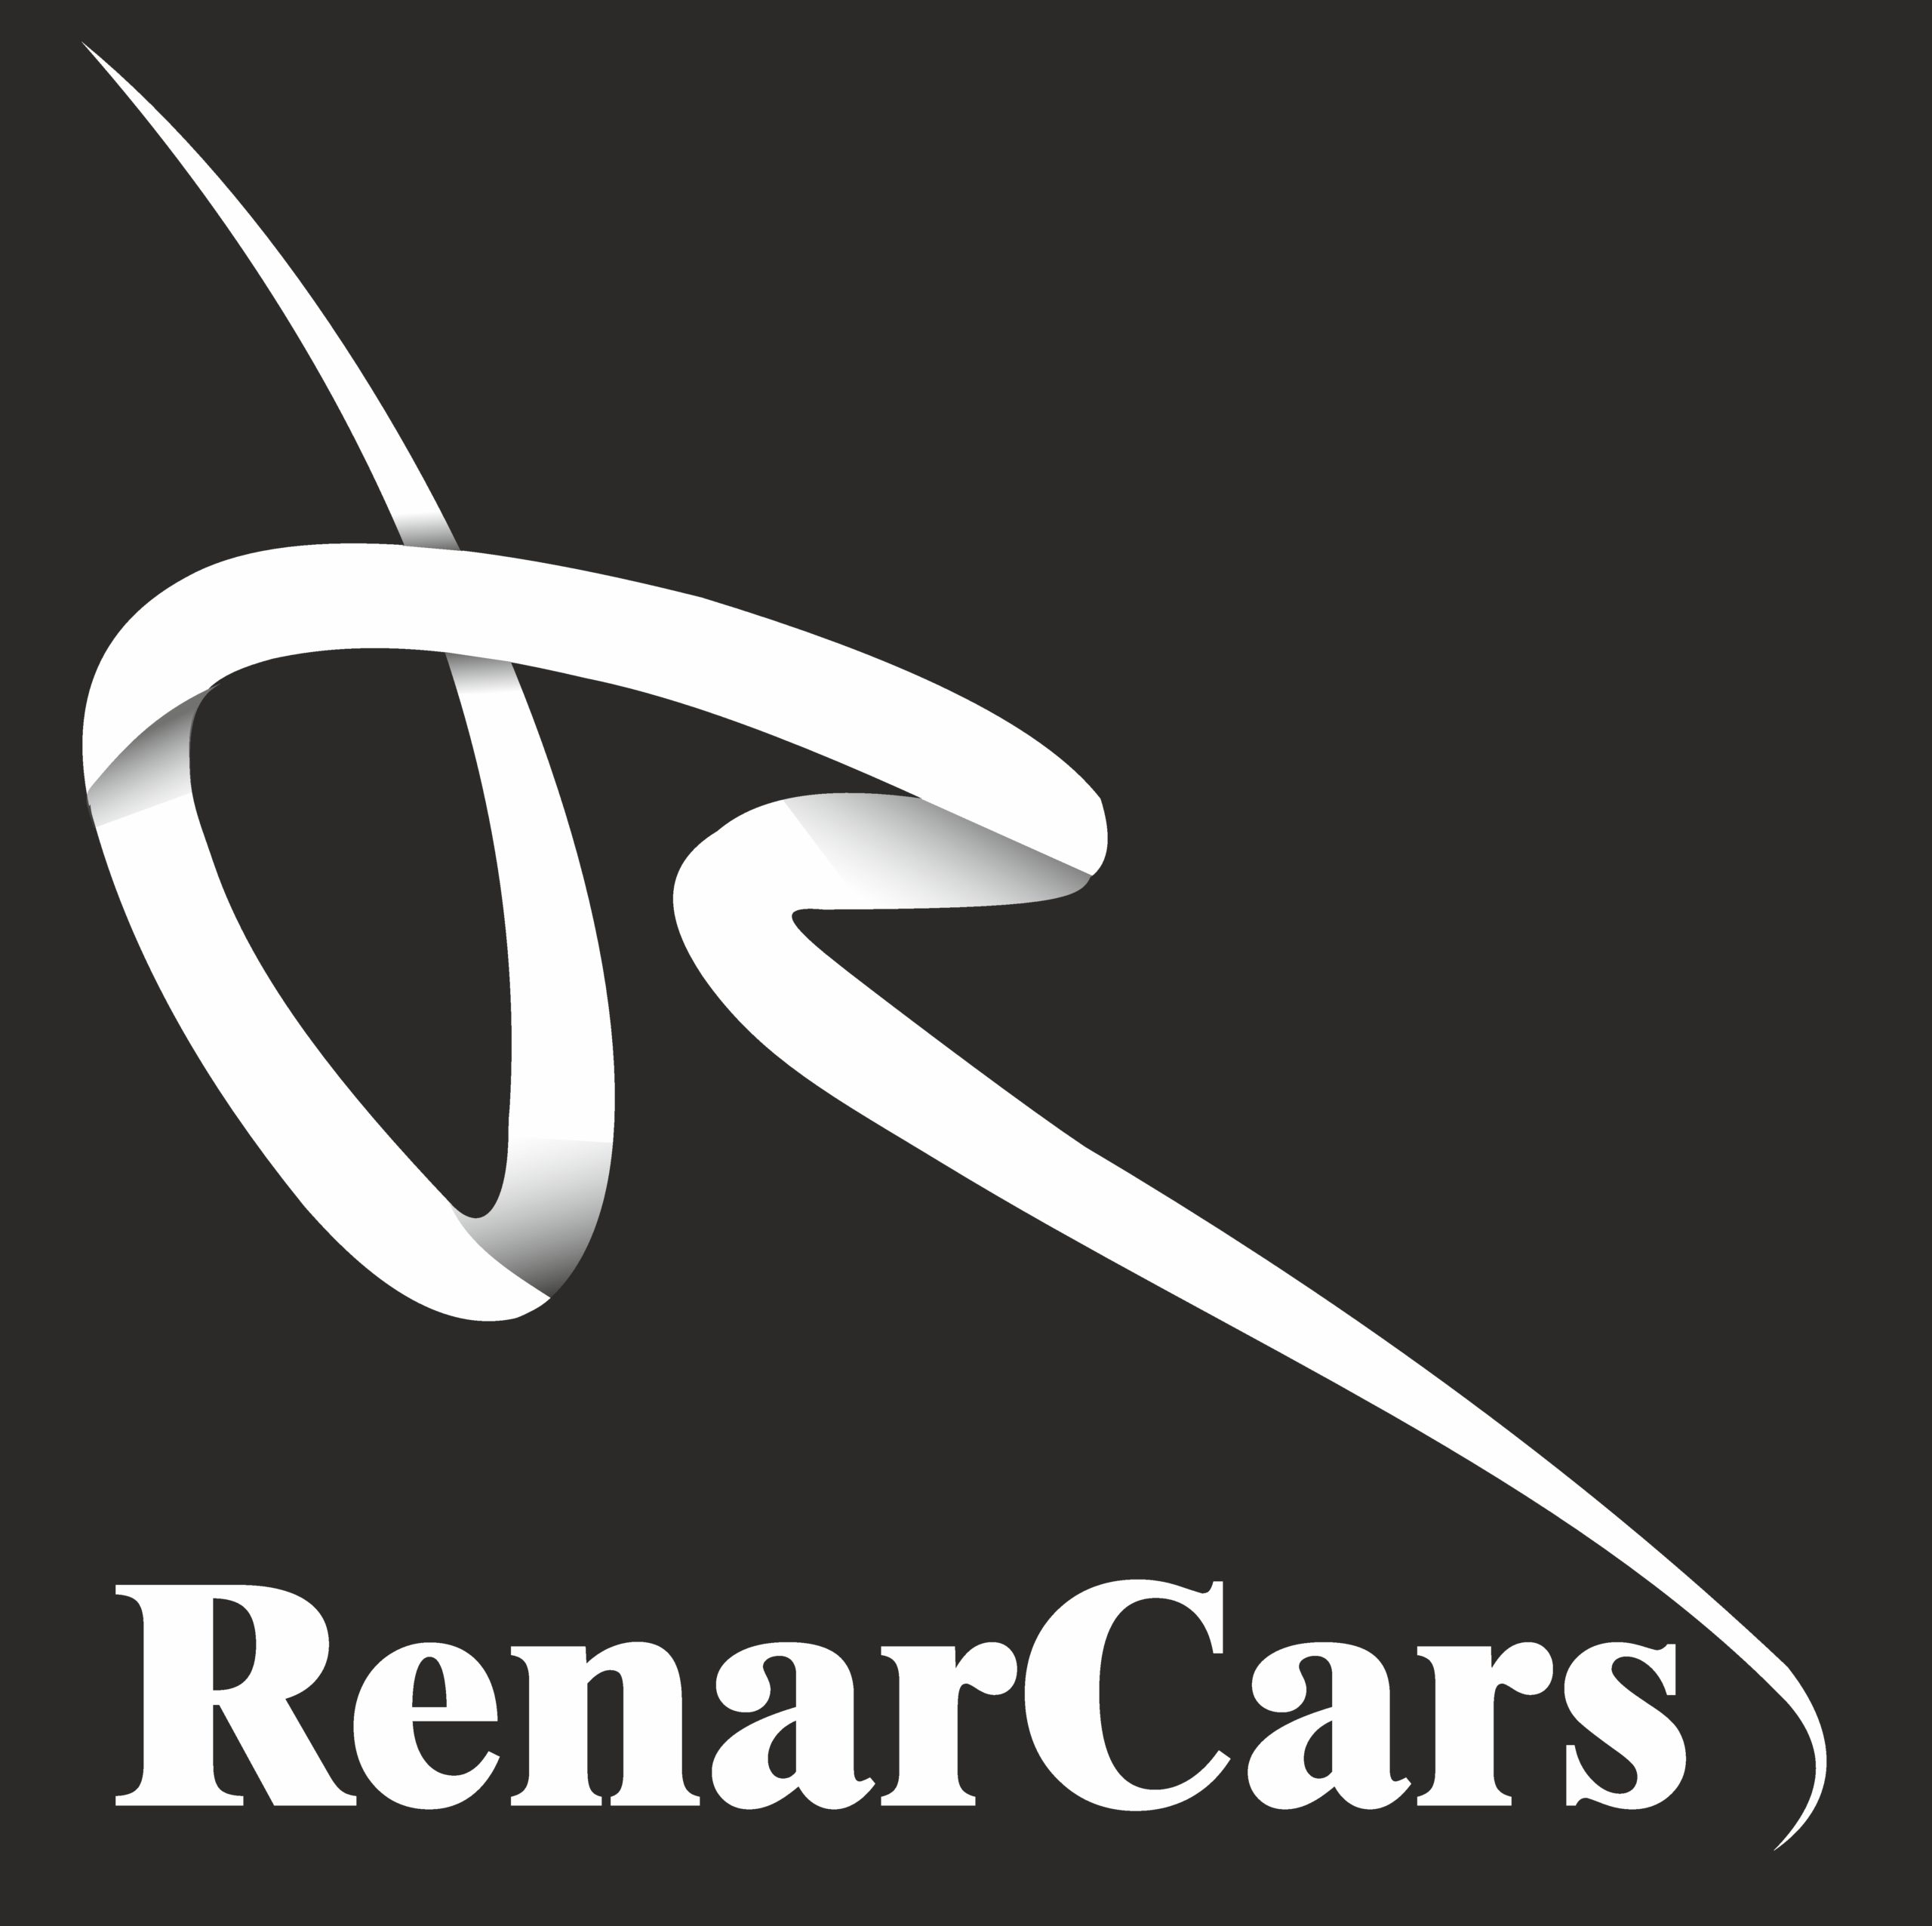 RenarCars